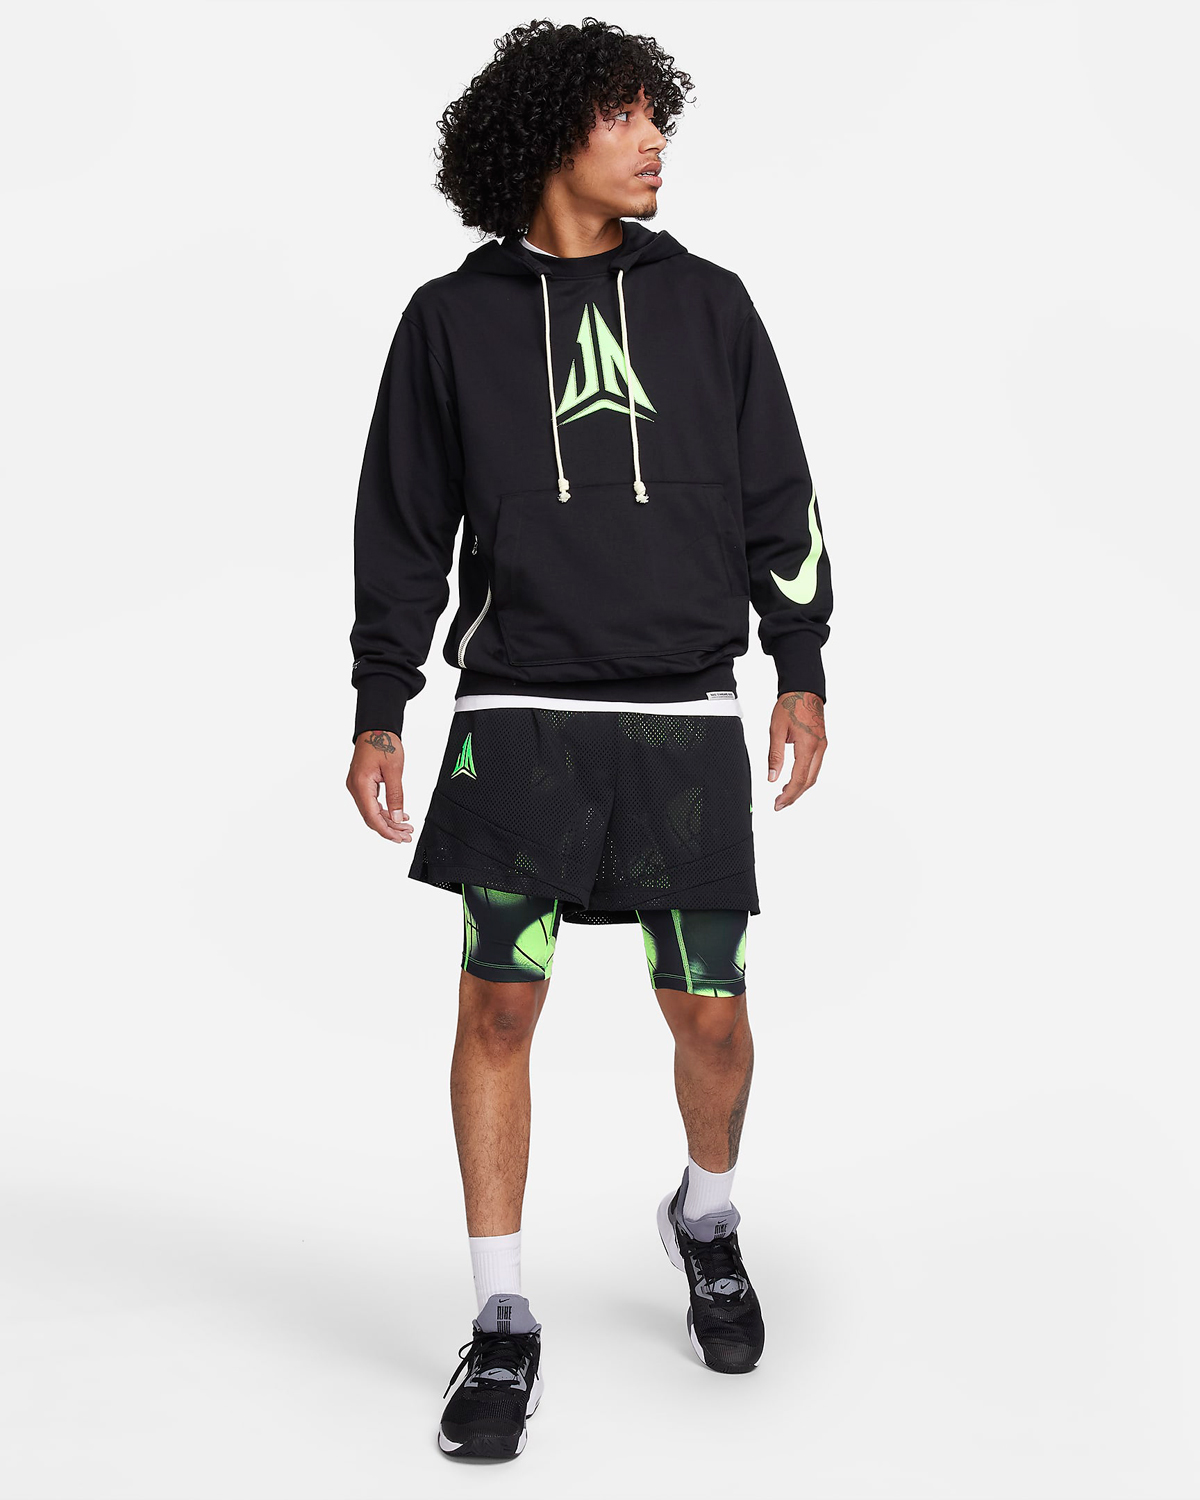 Nike-Ja-1-Zombie-Halloween-Hoodie-Shorts-Black-Lime